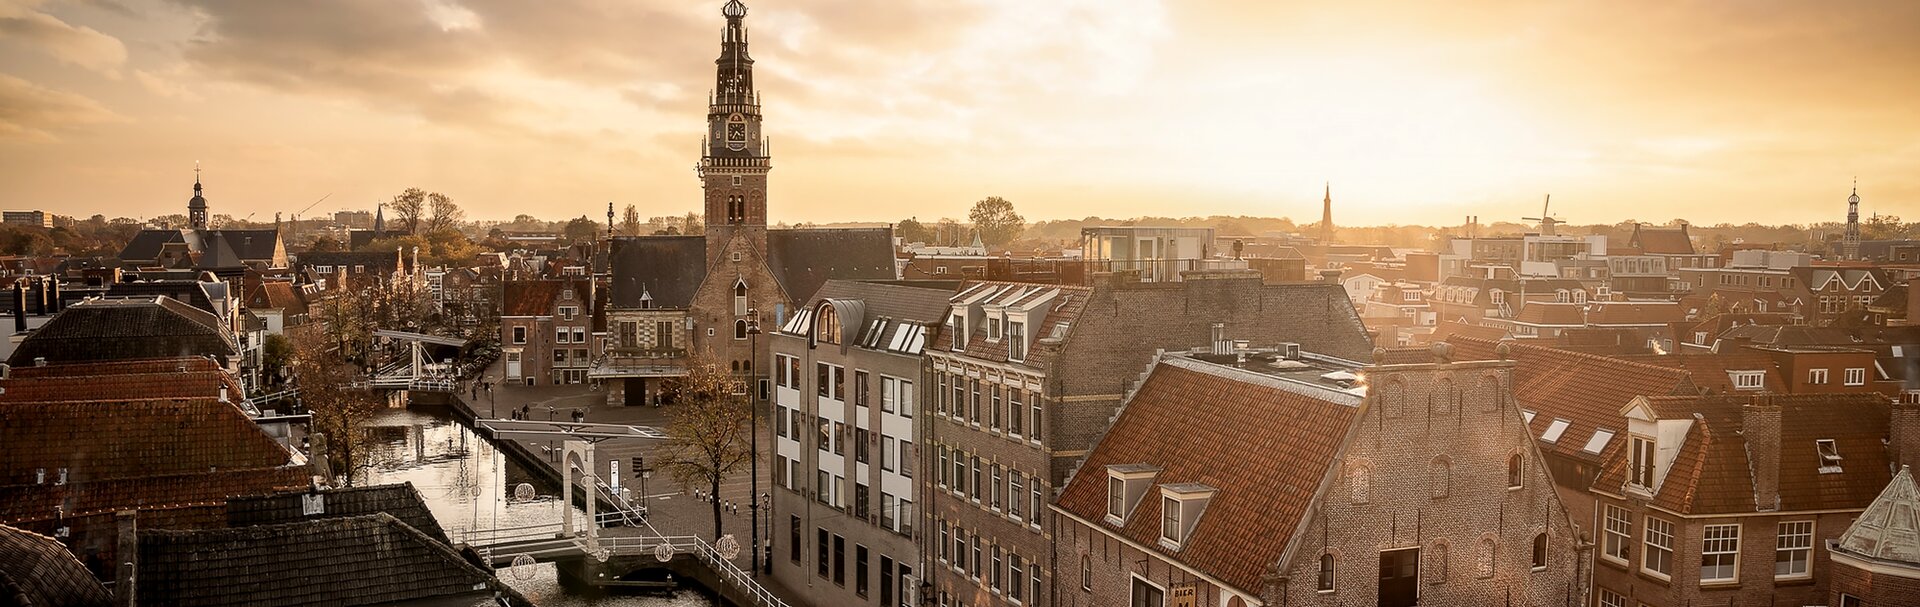 Entdecken Sie Alkmaar, eine wunderschöne Stadt!